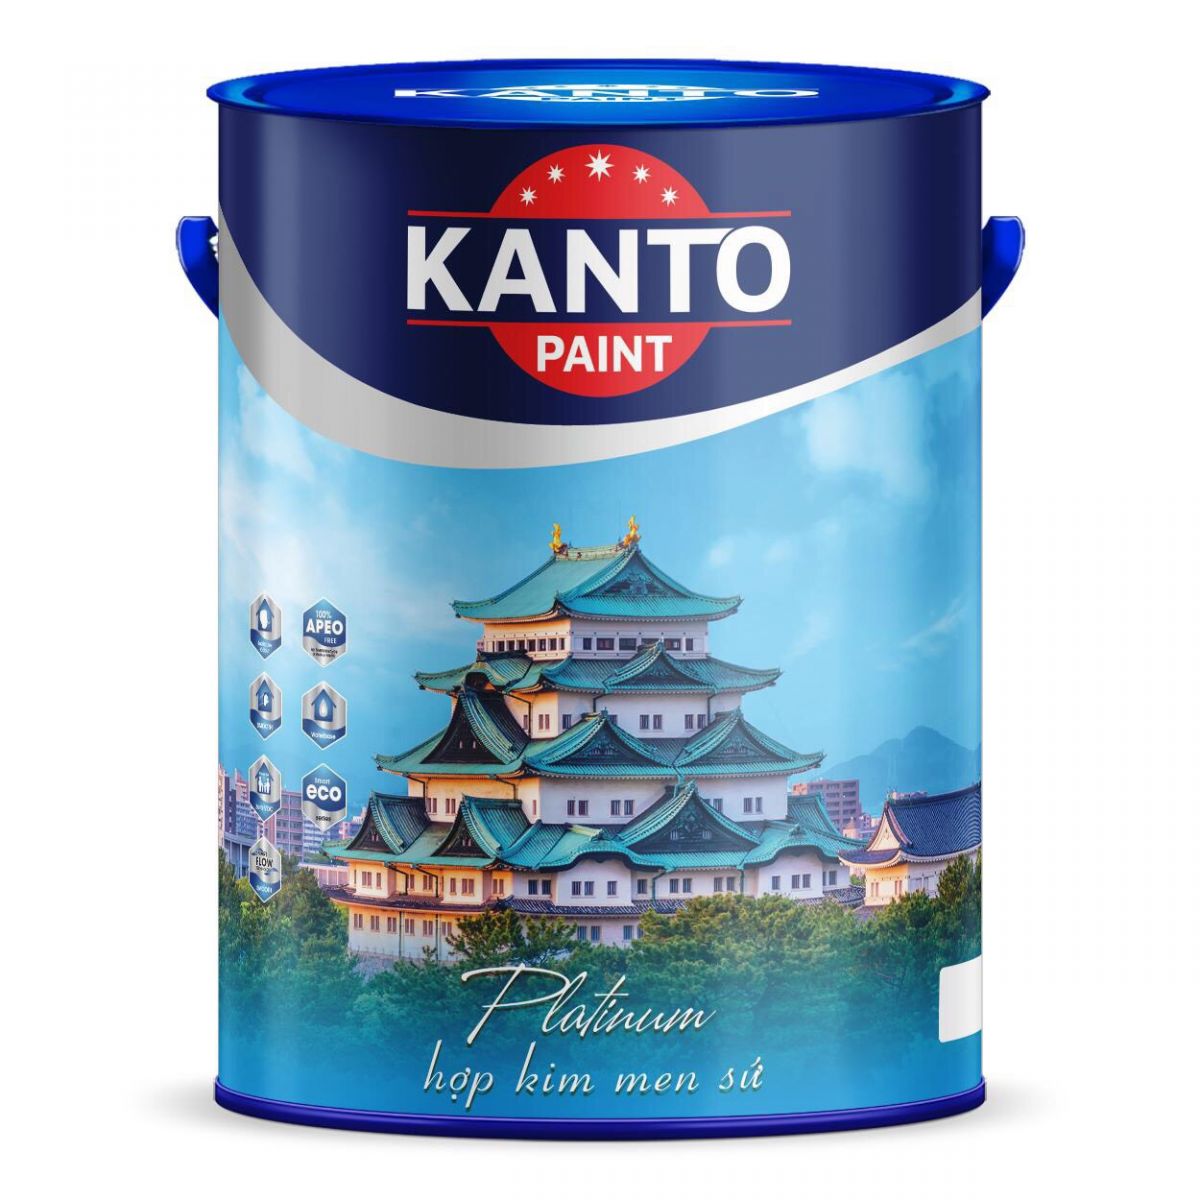 kanto paint